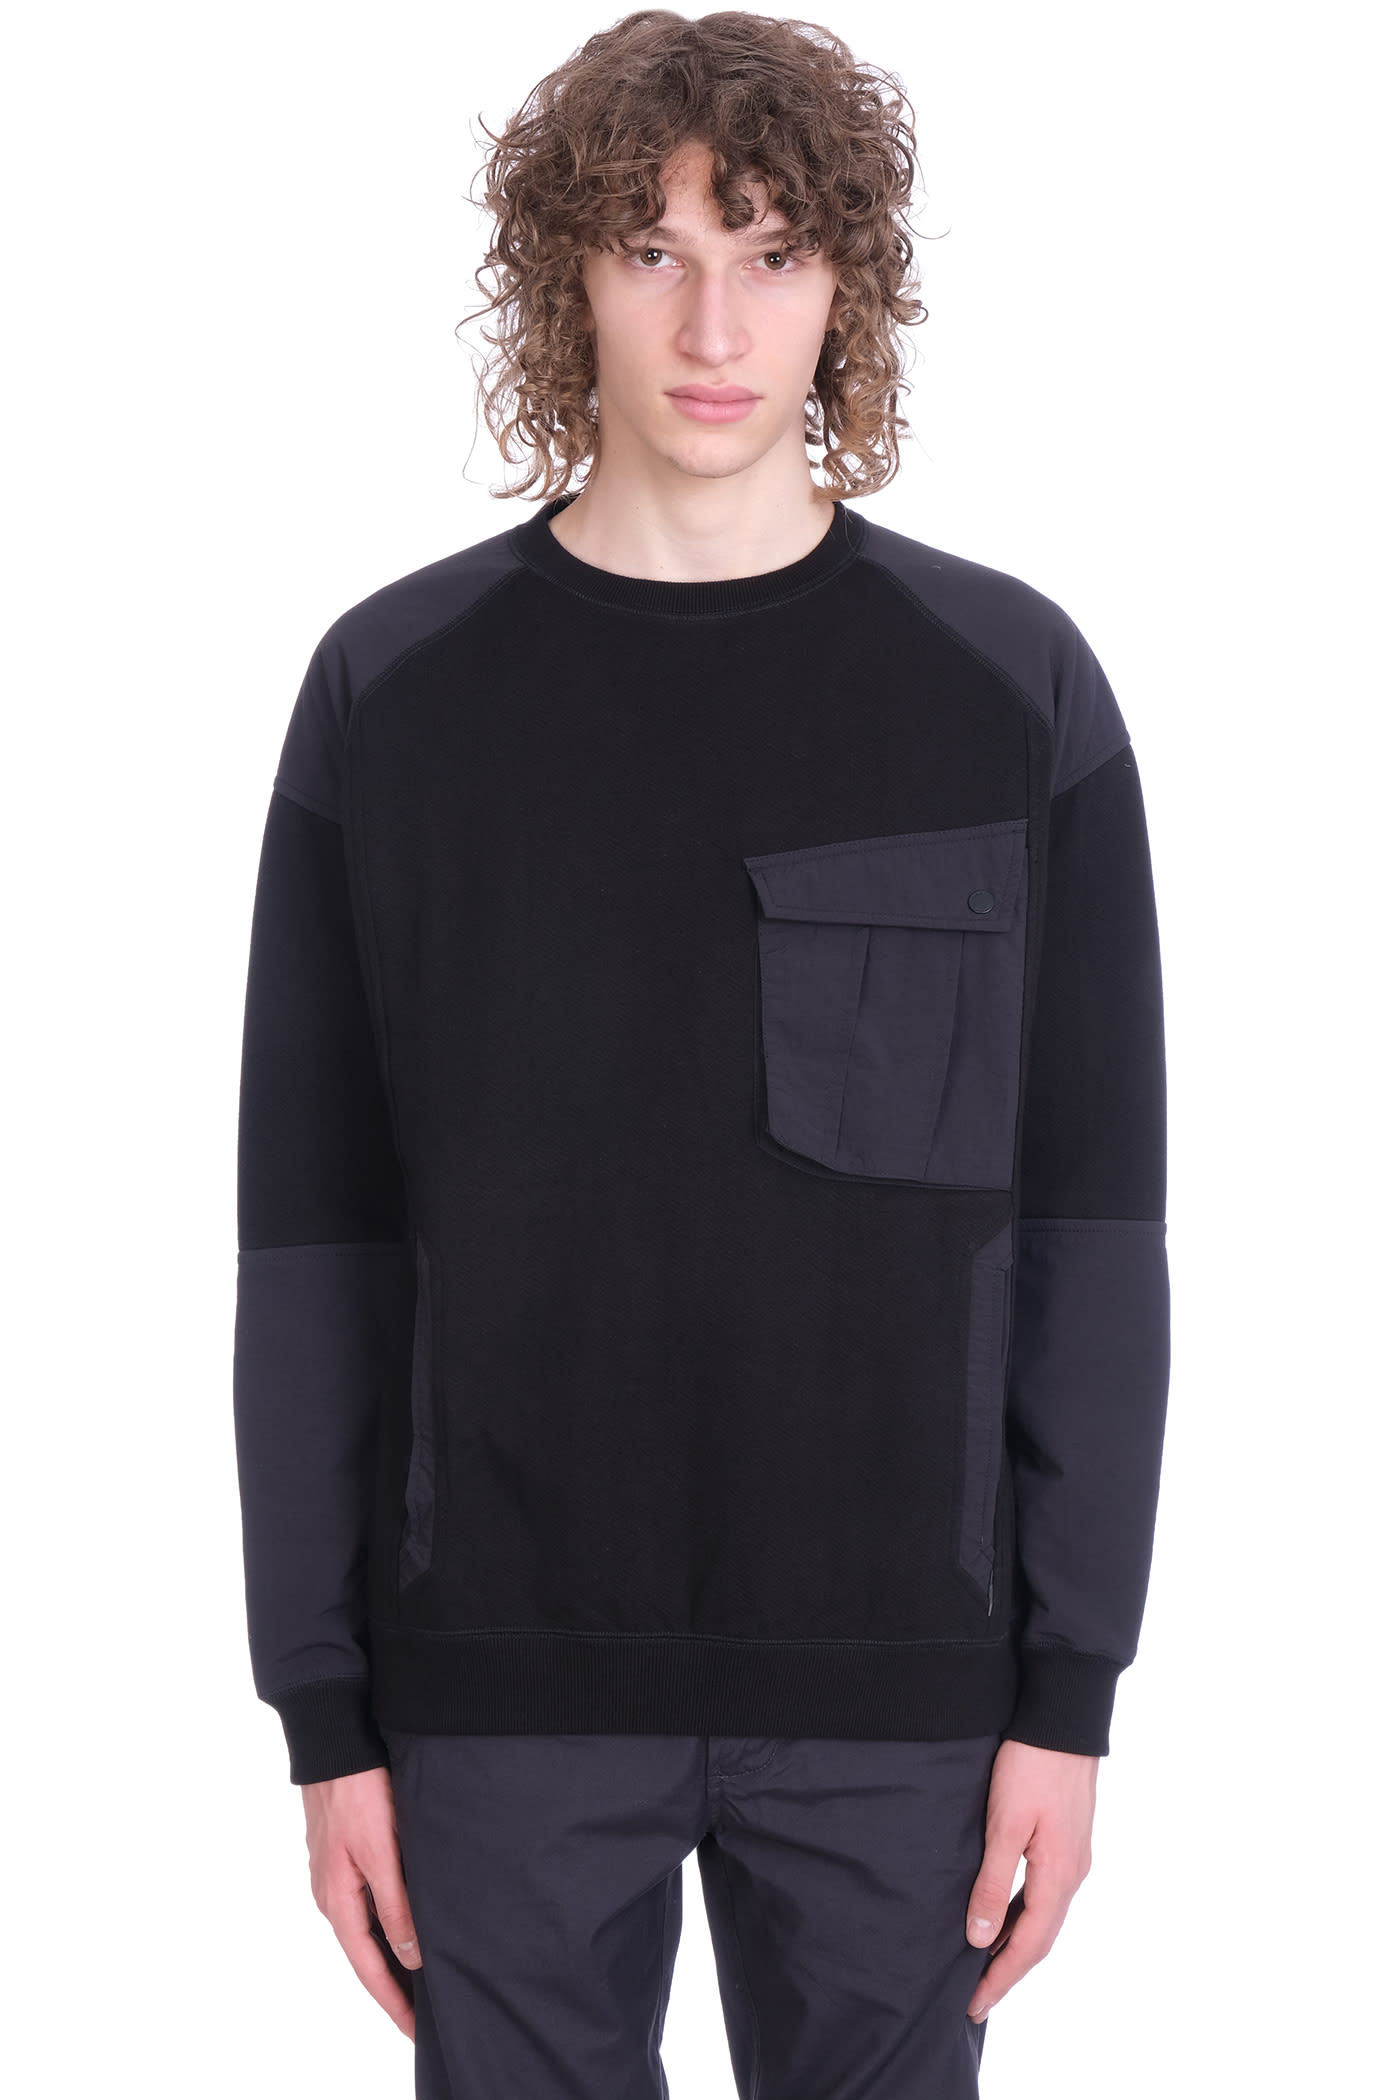 Maharishi Sweatshirt In Black Nylon